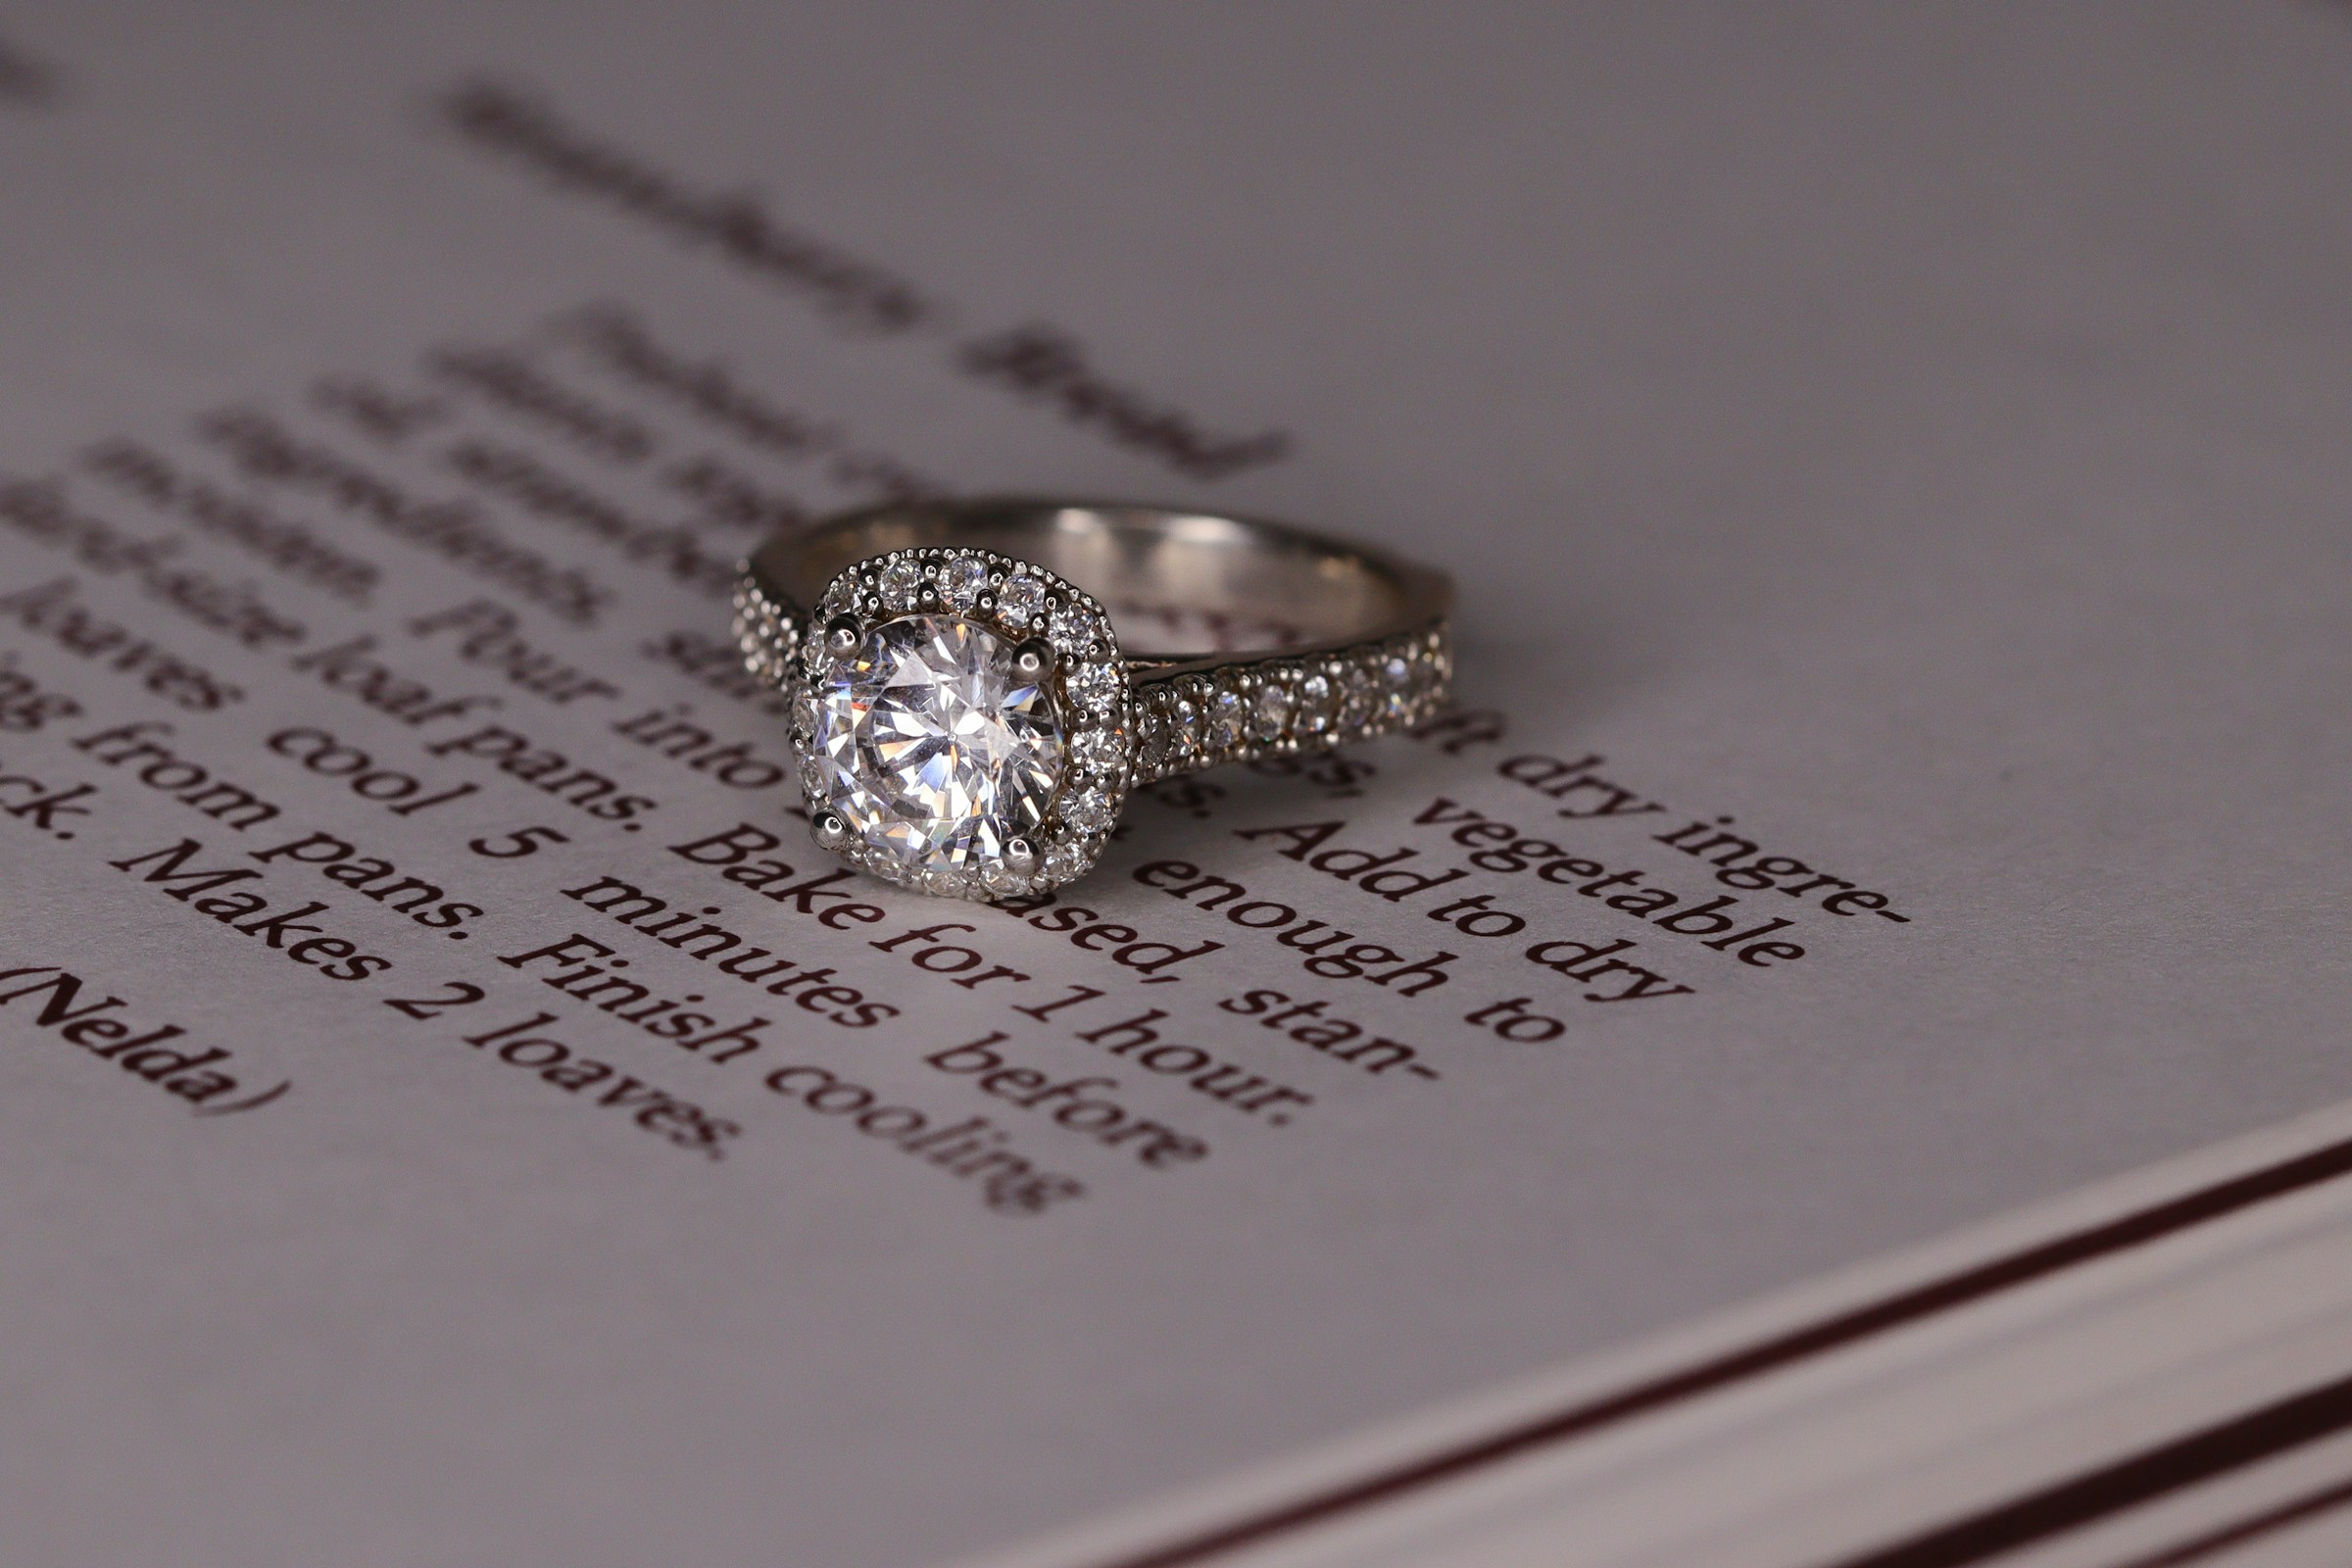 Un anillo de compromiso de diamantes estilo halo de oro blanco sobre un libro | Fuente: Unsplash